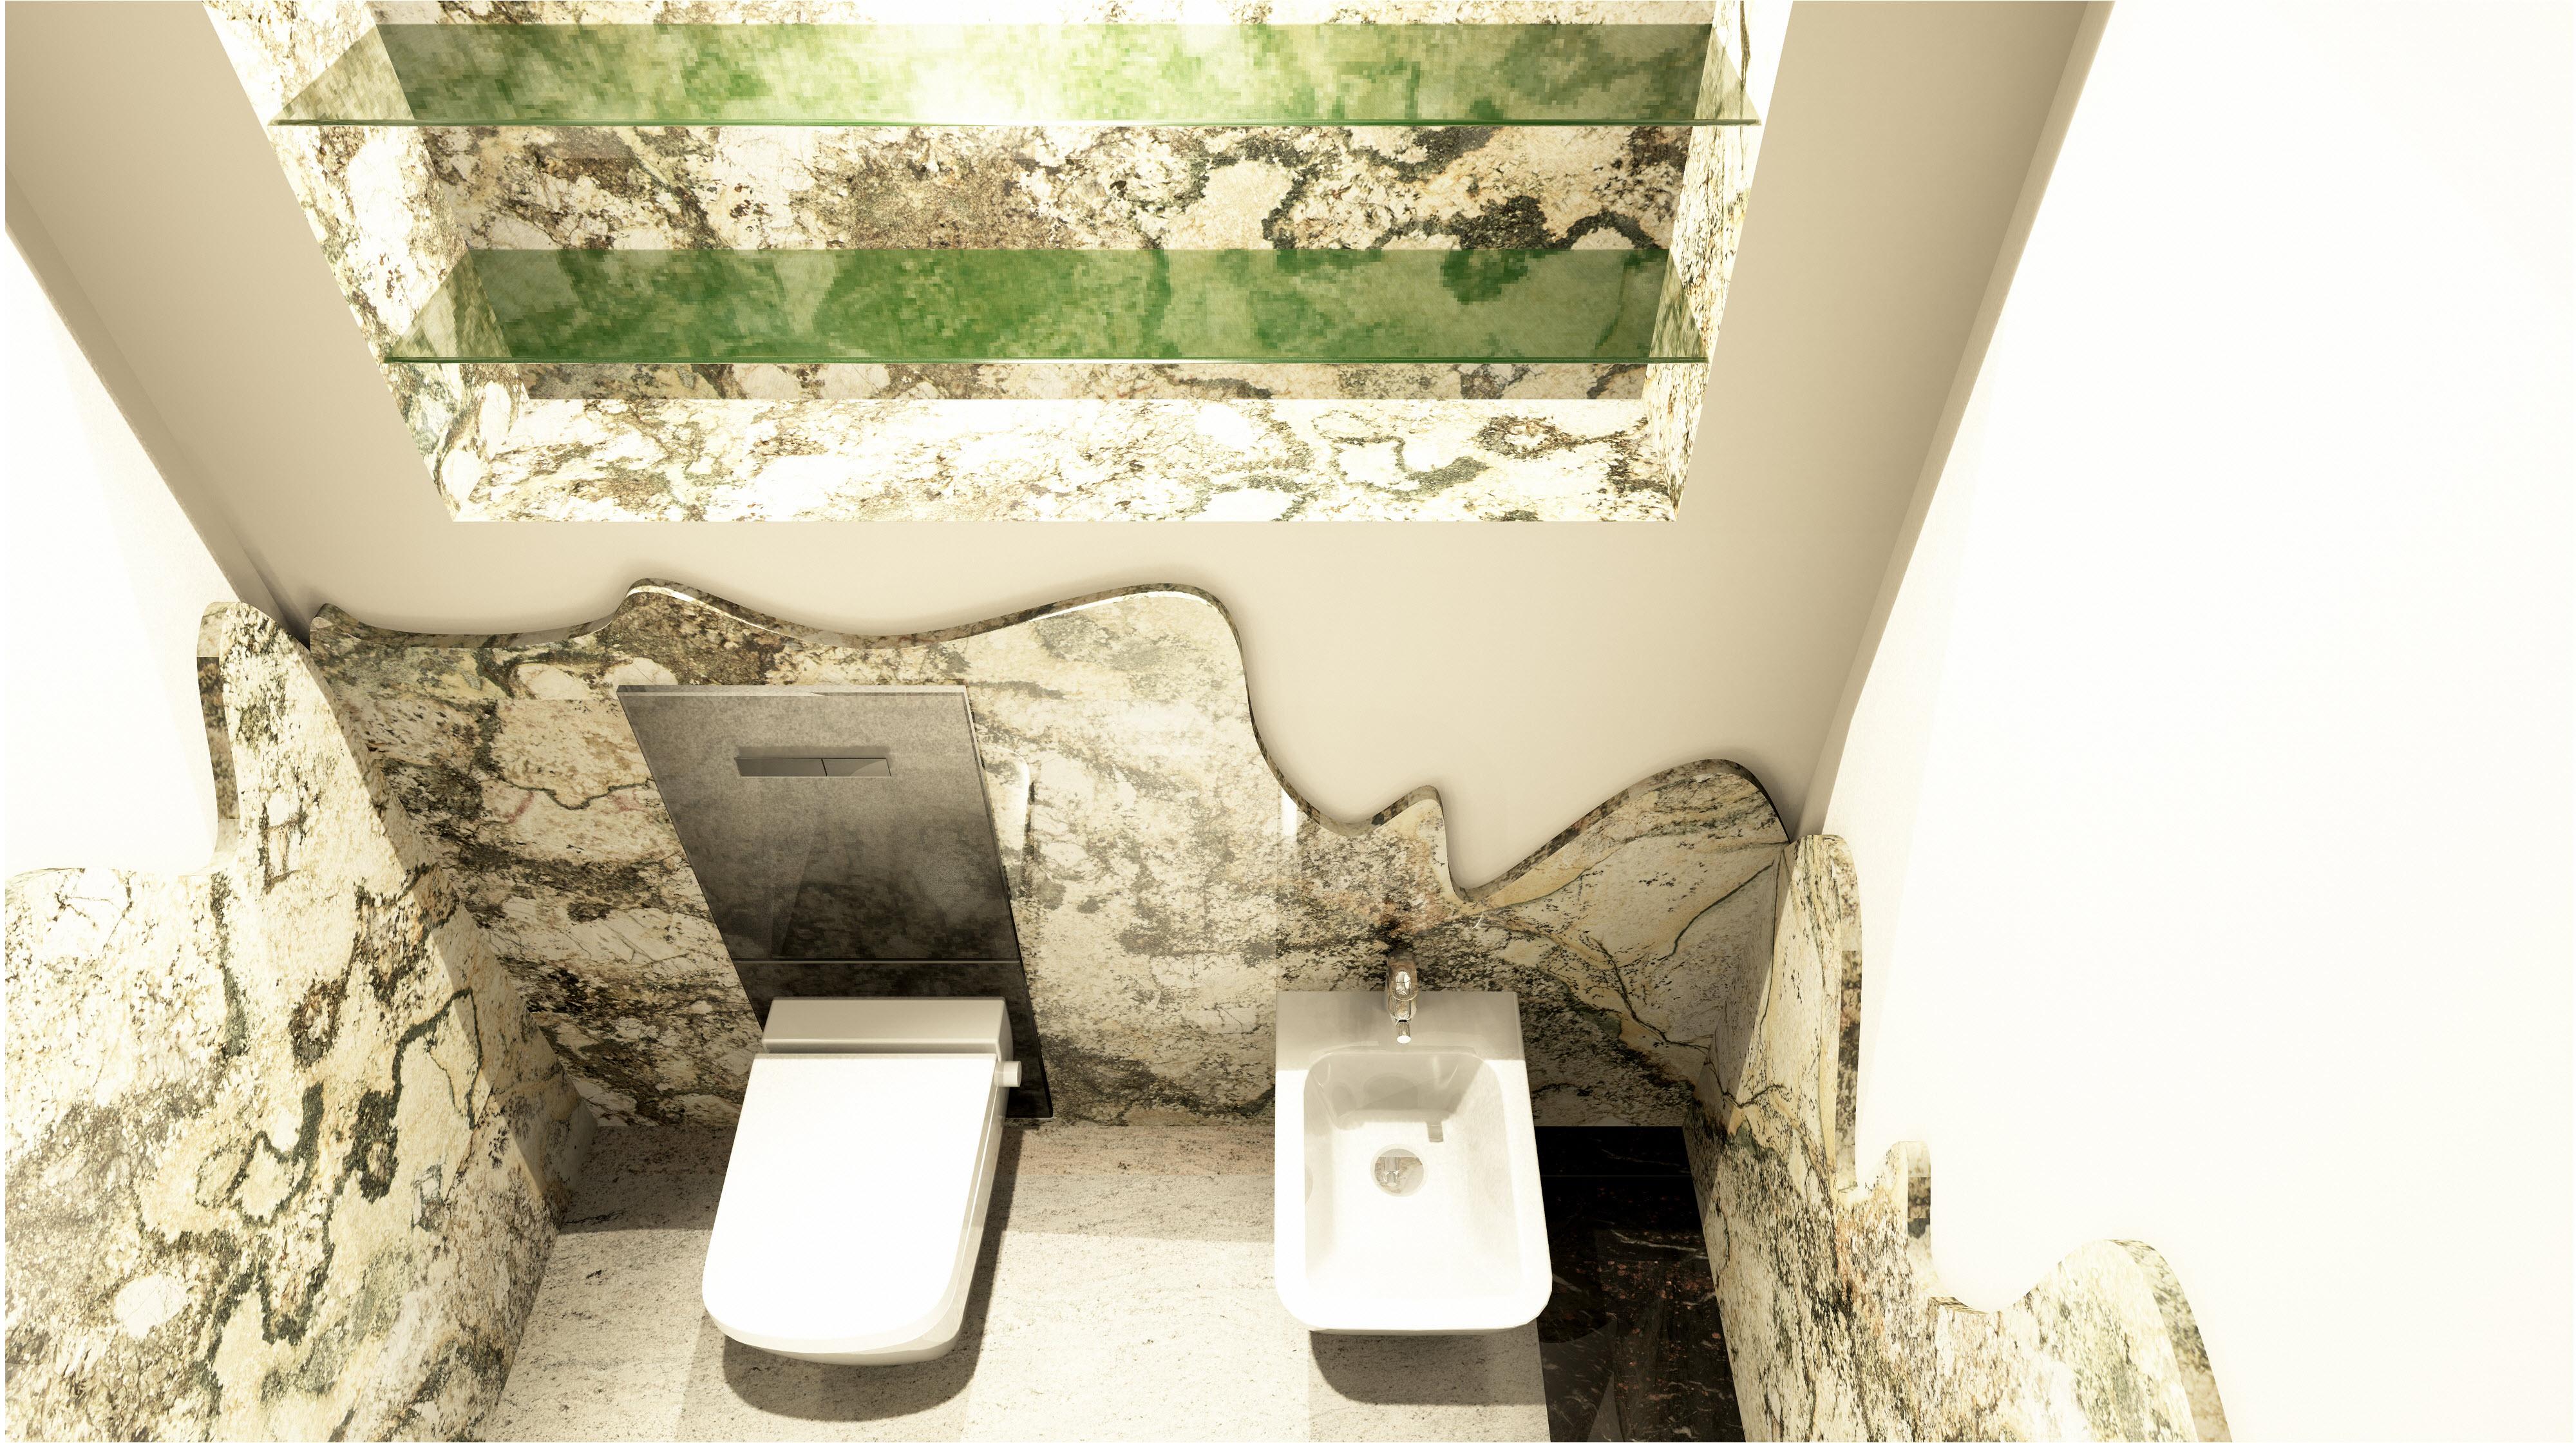 Naturstein WC Bidet Bereich mit Lichteffekte #natursteinbad ©3D Riedus Visuality GbR